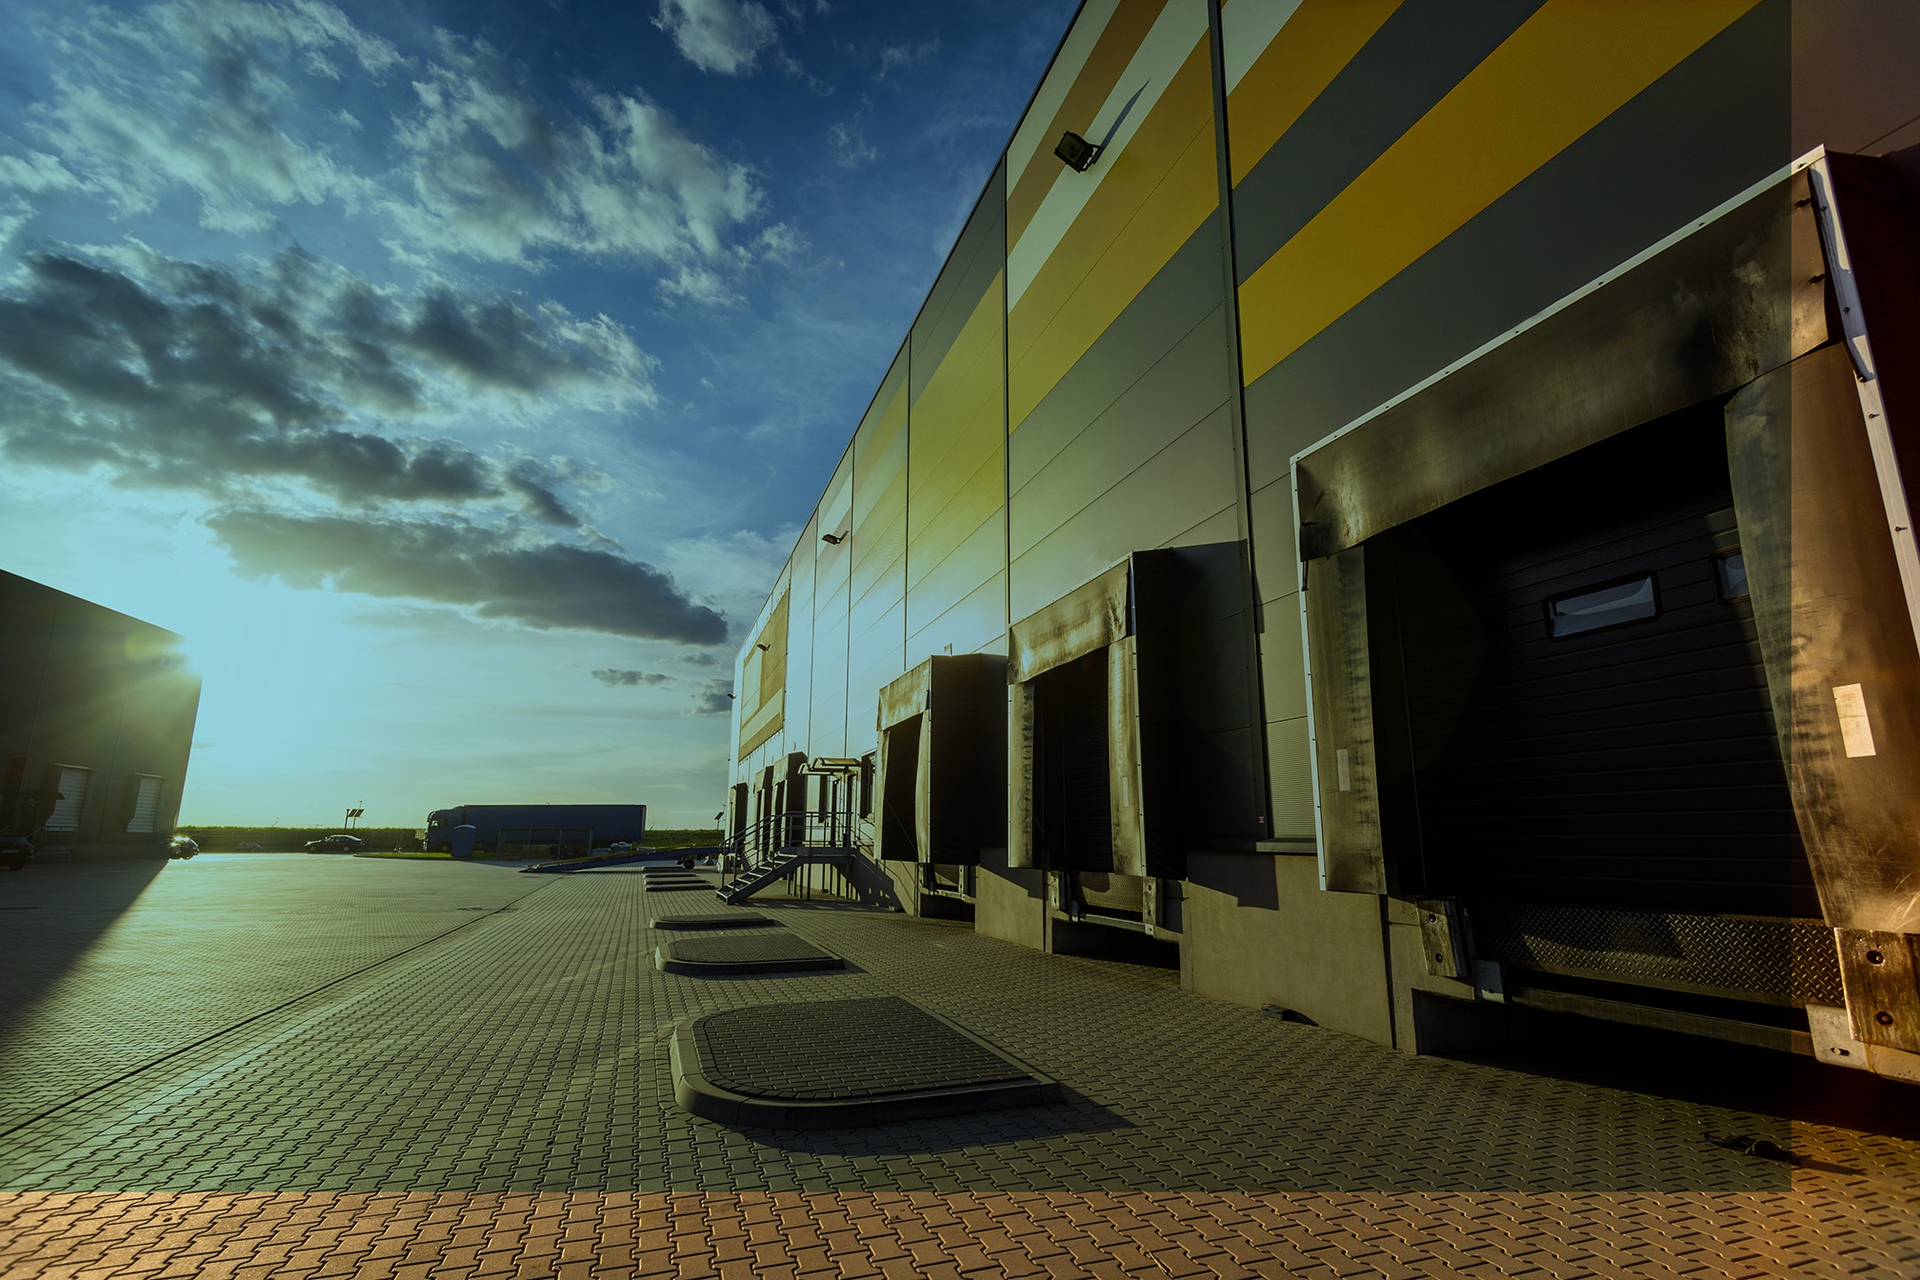 cargo-loading-dock-doors-of-big-warehouse-building-8rfzsze-3-